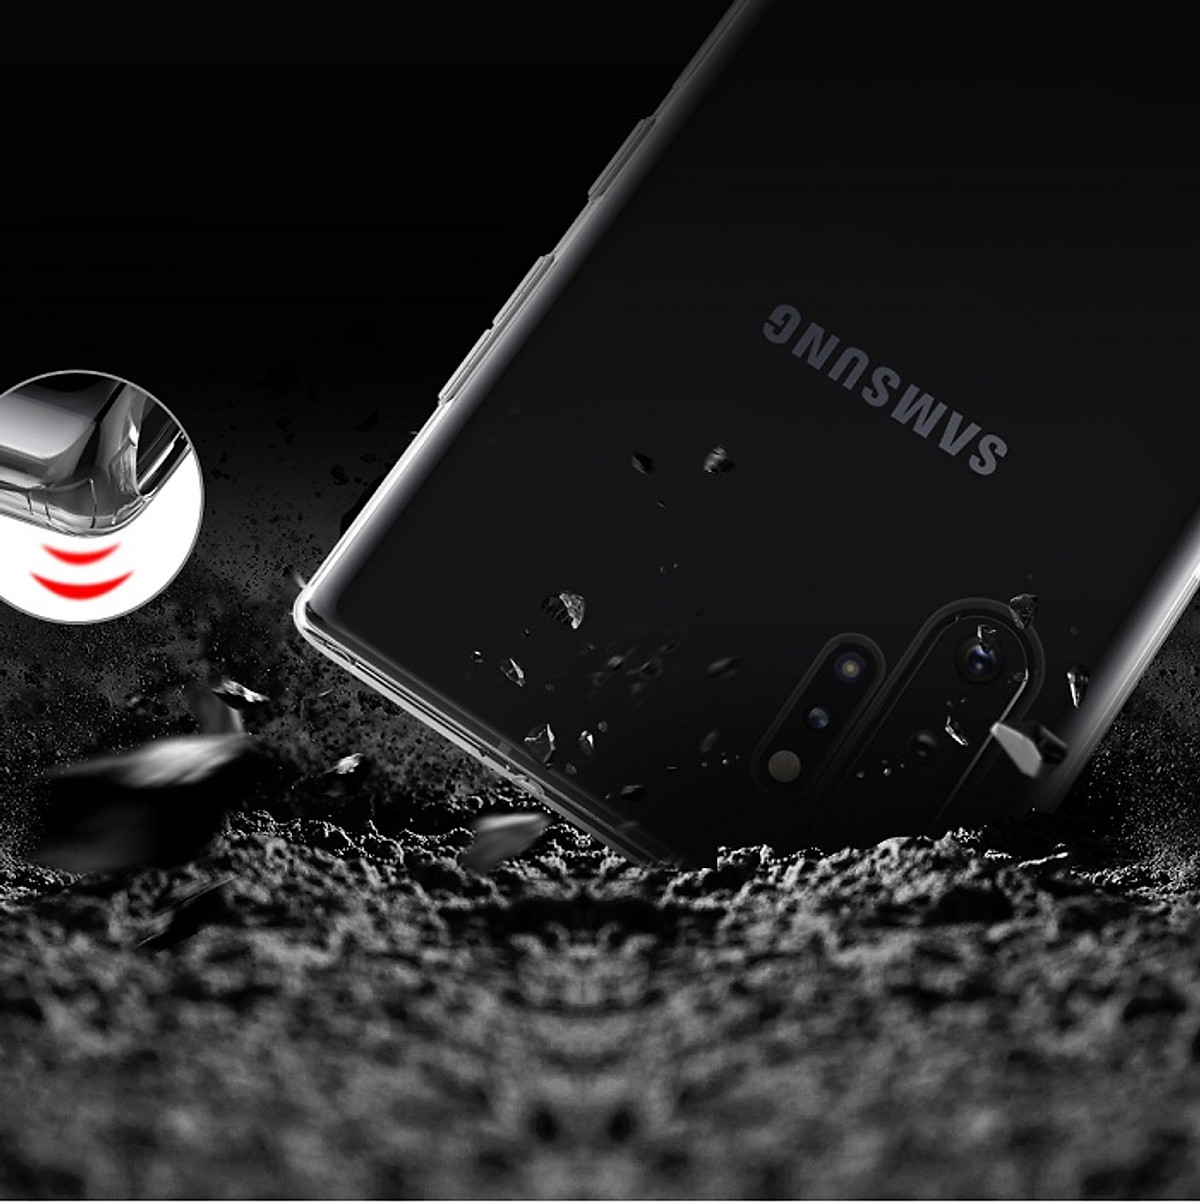 Ốp lưng dẻo trong suốt hiệu Nillkin Nature dành cho SamSung Galaxy Note 10 Plus - Hàng chính hãng